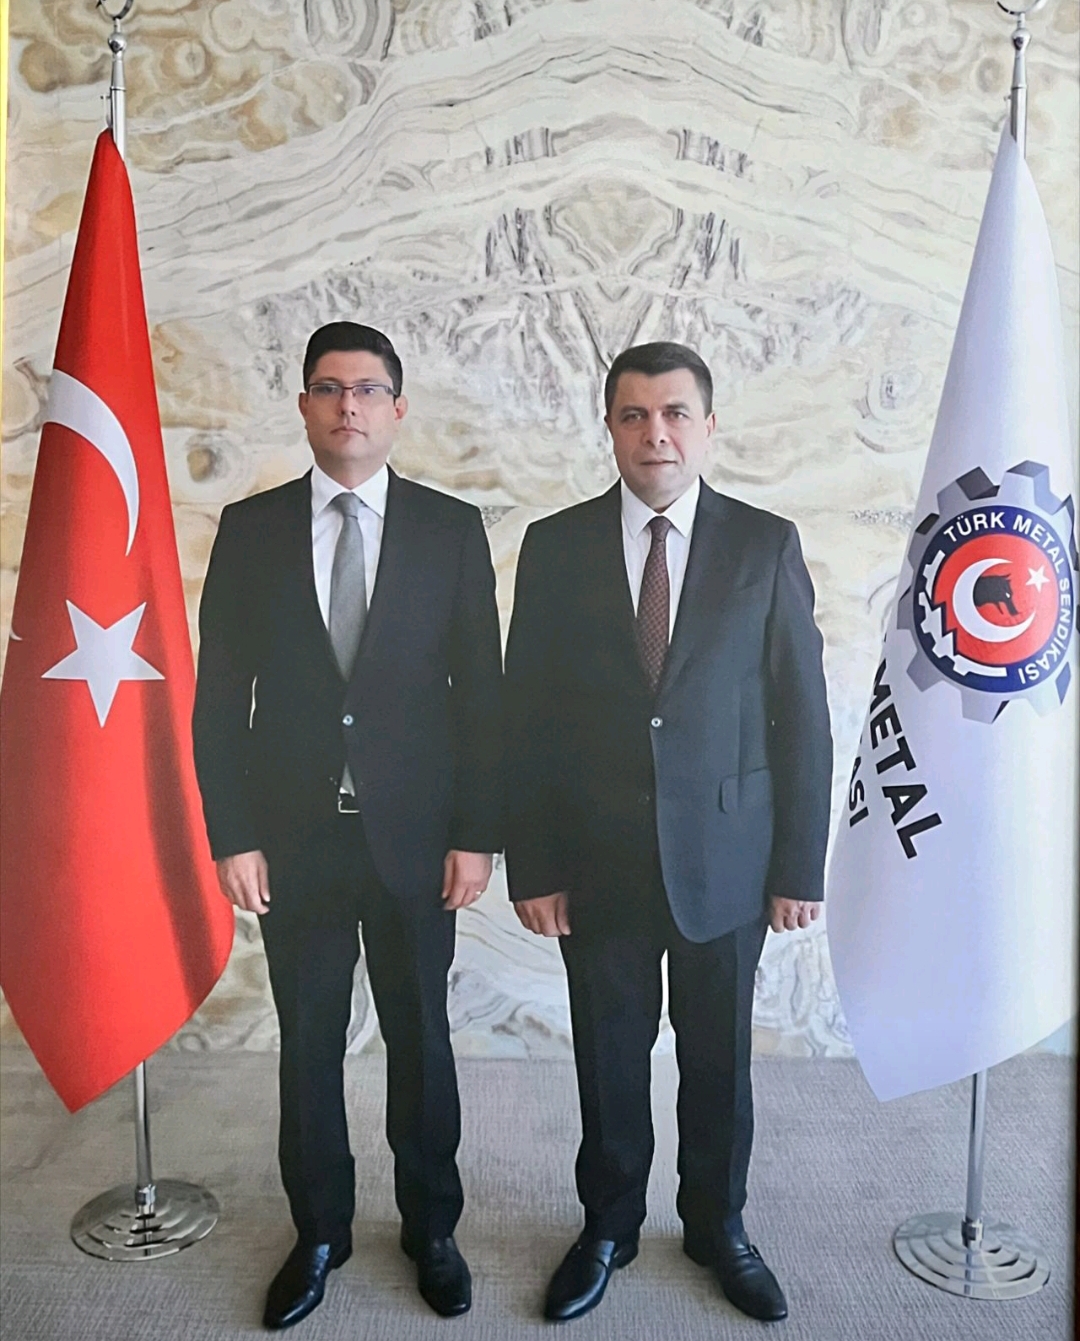 uysal-altundag-pevrul-kavlak-turk-metal-sendikasi Türk Metal Sendikası Yeni Genel Başkanı Uysal Altundağ Oldu